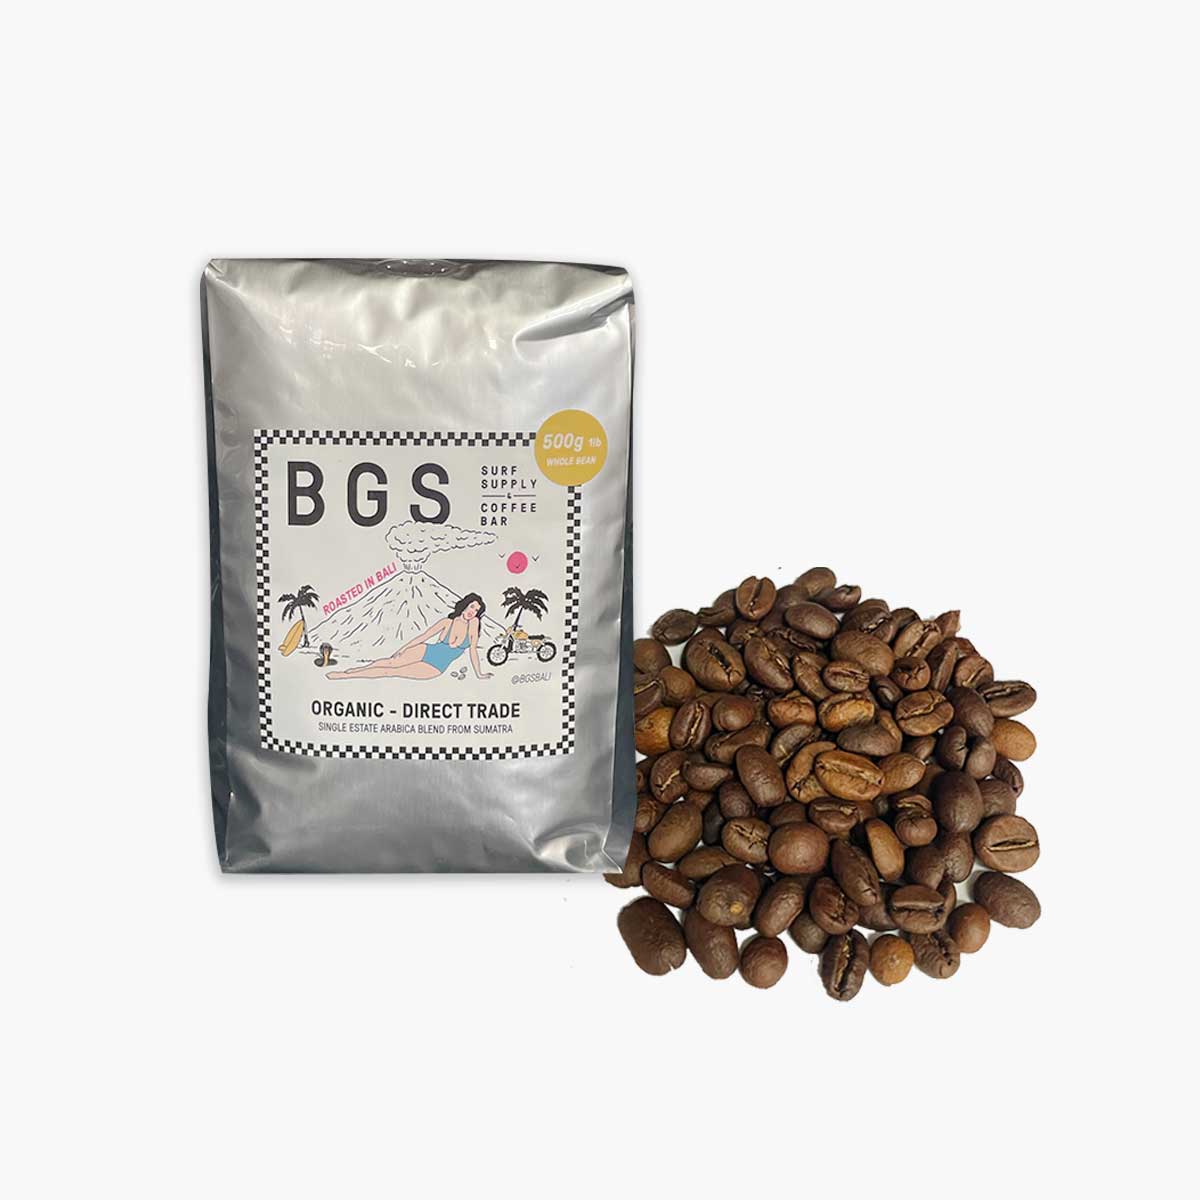 BGS Coffee Bean